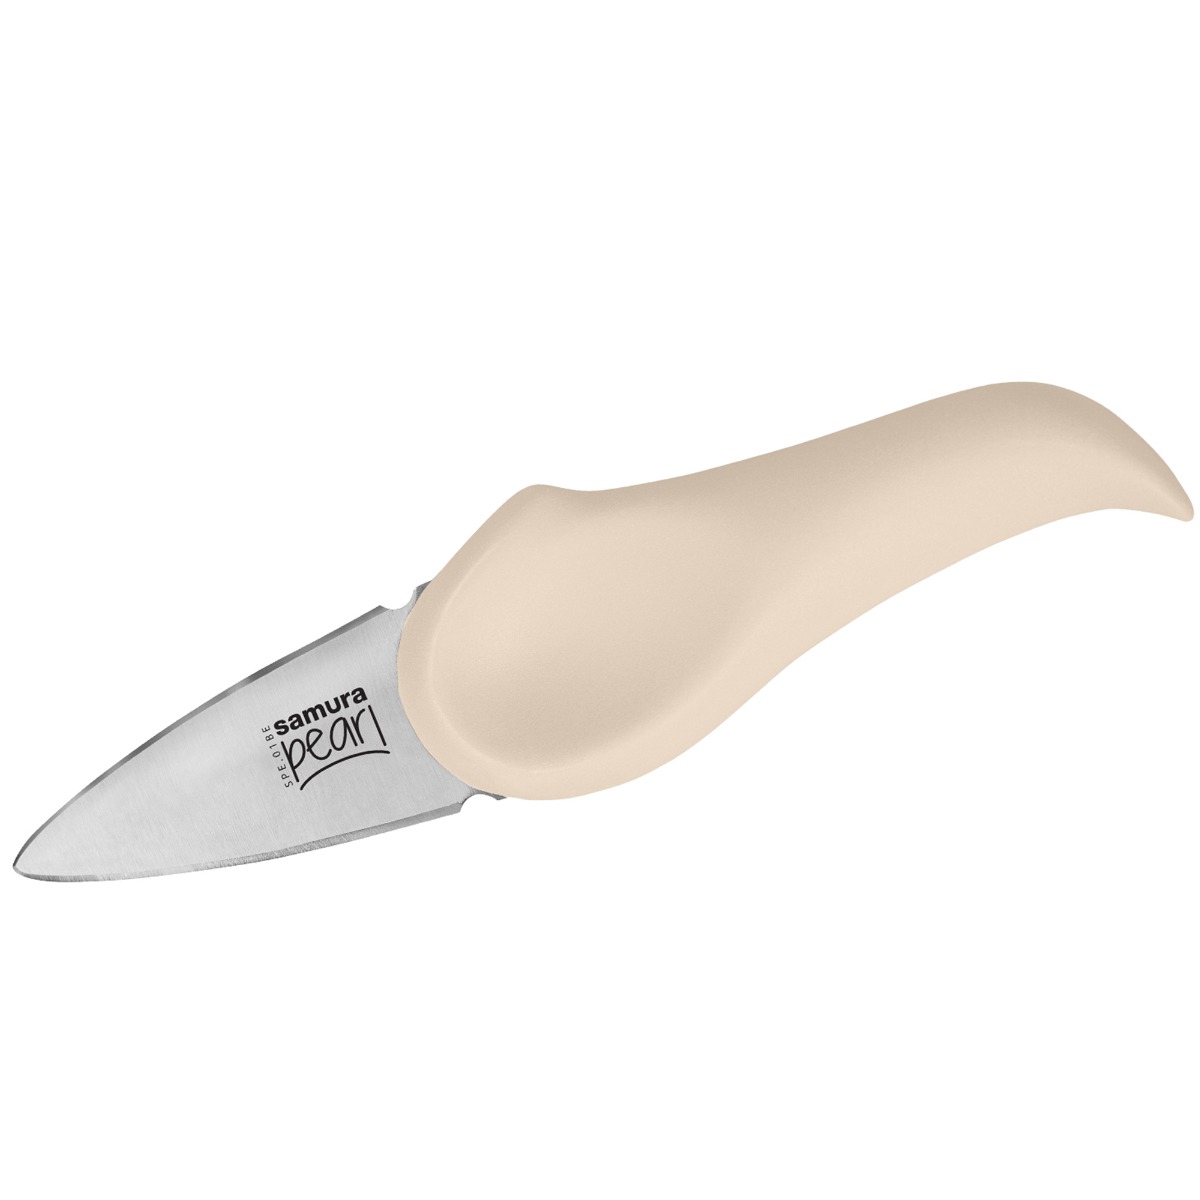 Μαχαίρι για Όστρακα, 7.3cm (Μπεζ), PEARL - SAMURA®️